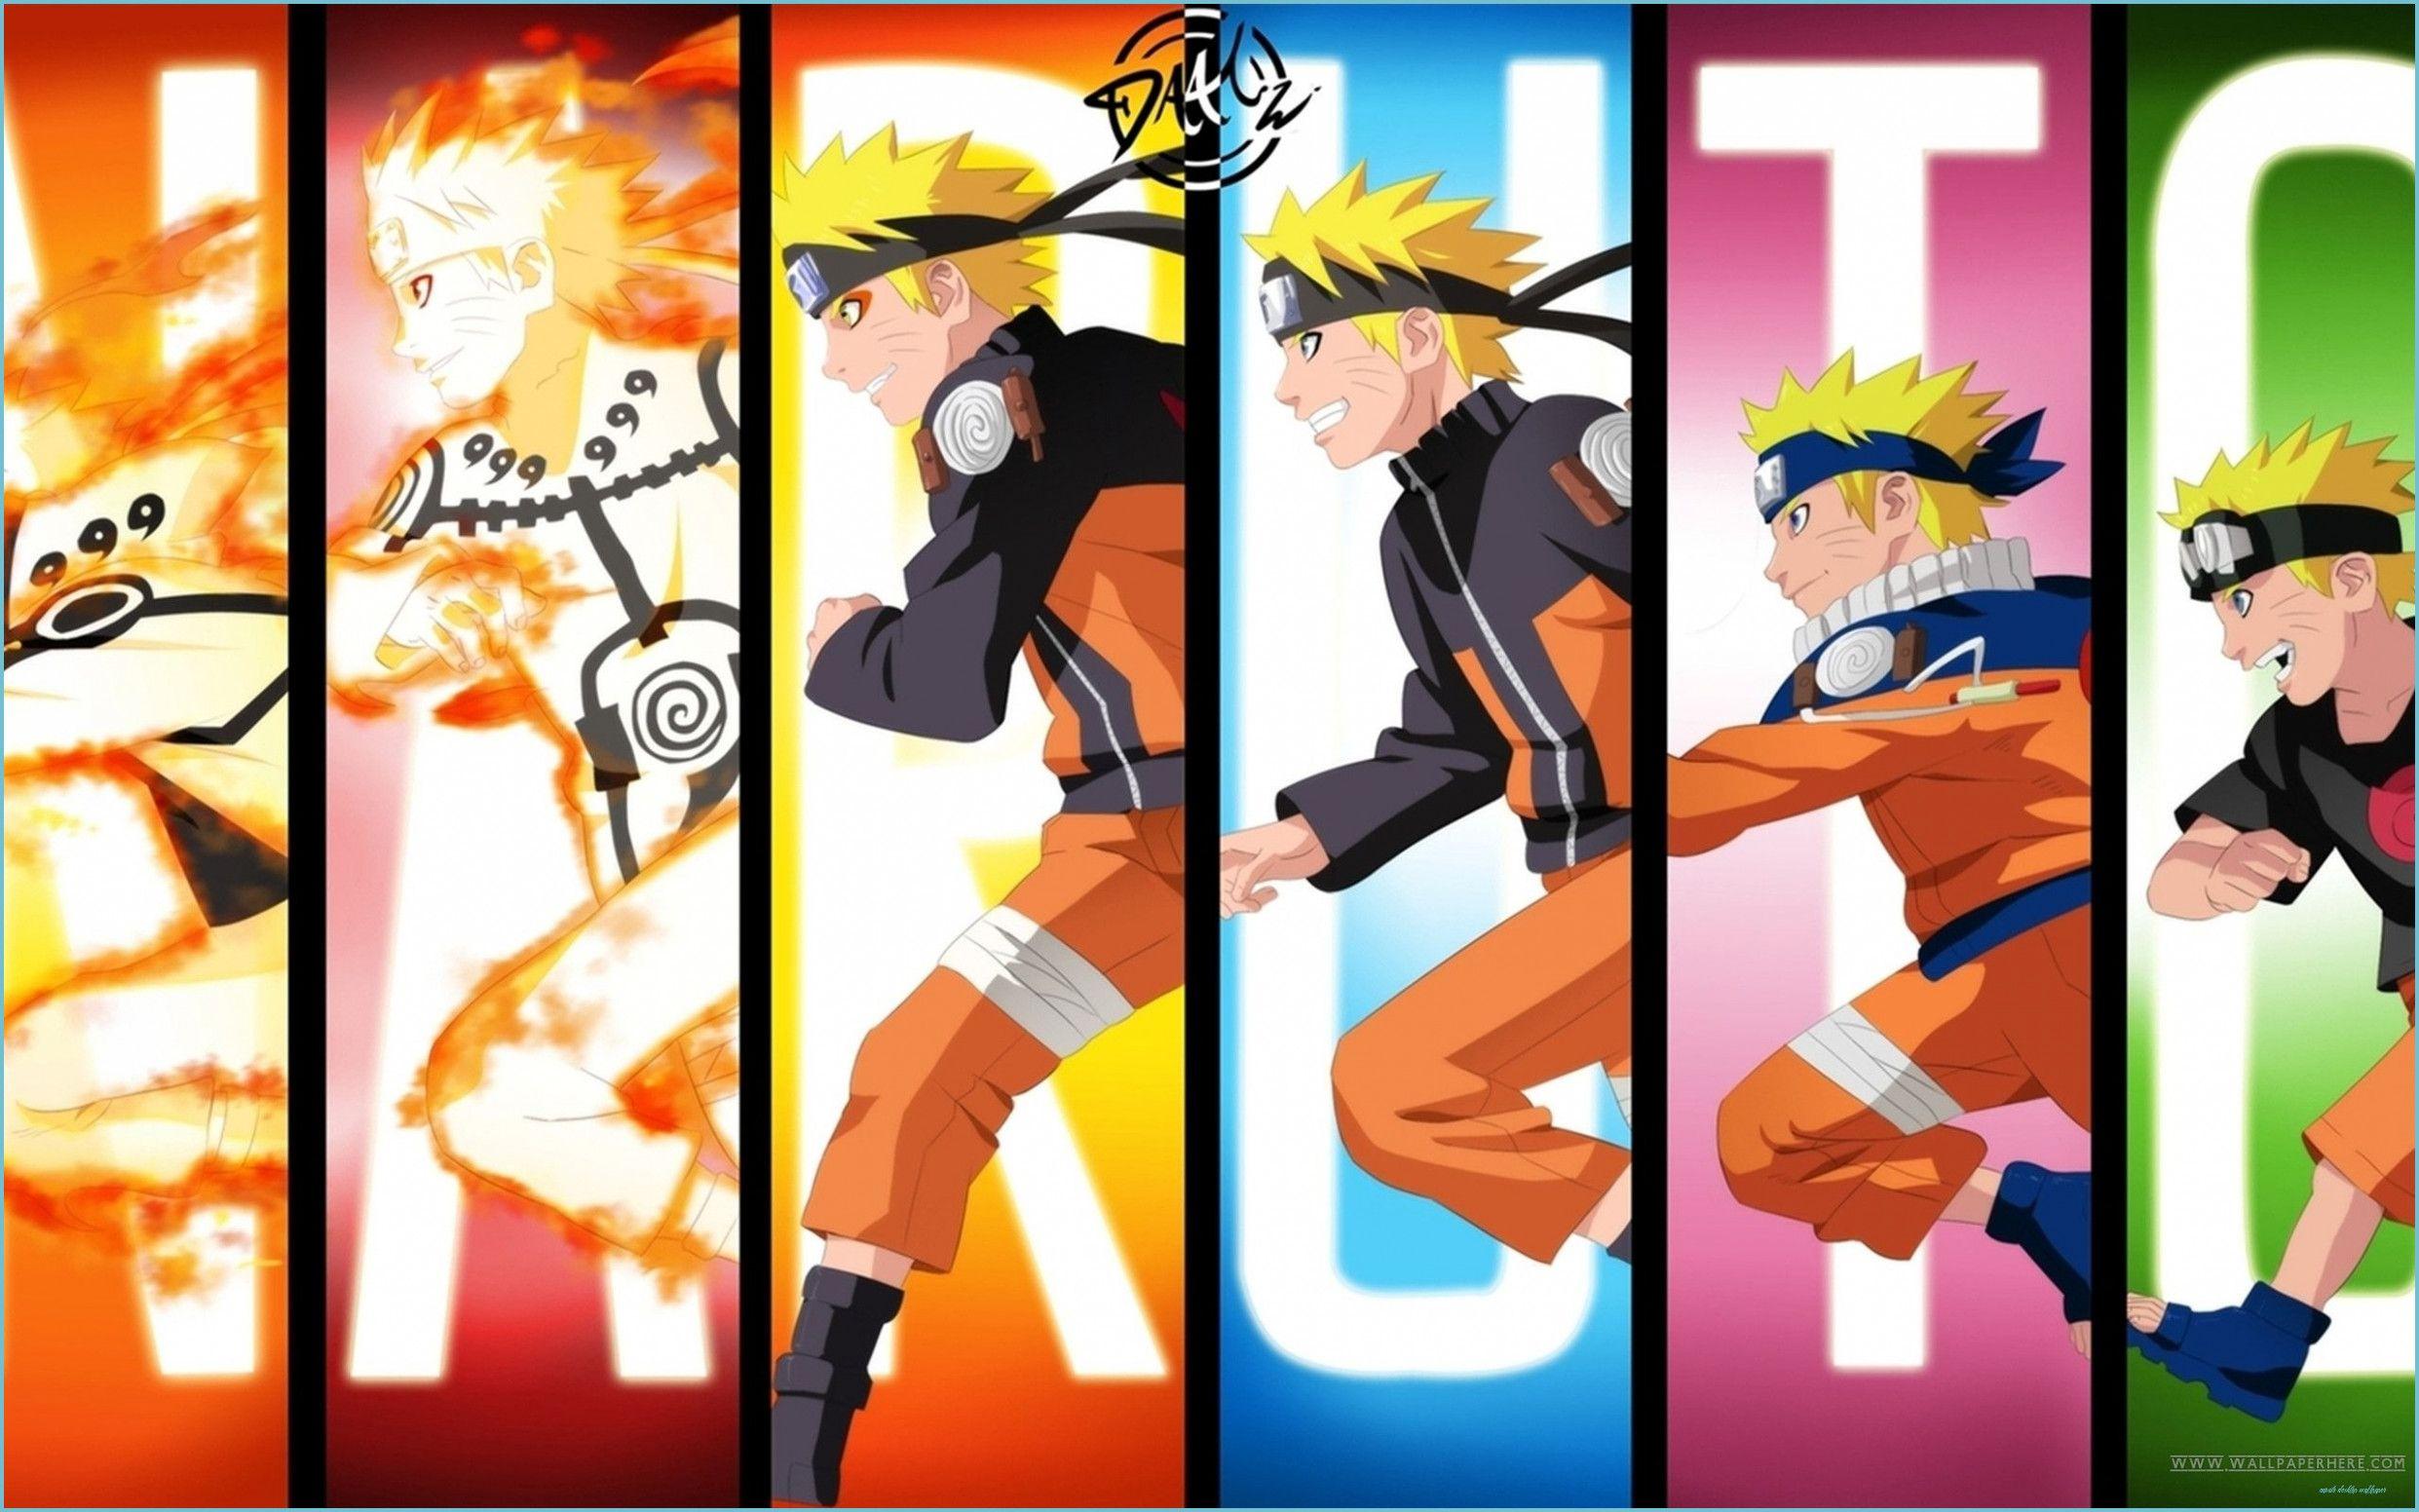 2483x1552 Tải xuống Hình nền Naruto Shippuden ở độ phân giải cao hoặc - Hình nền máy tính Naruto